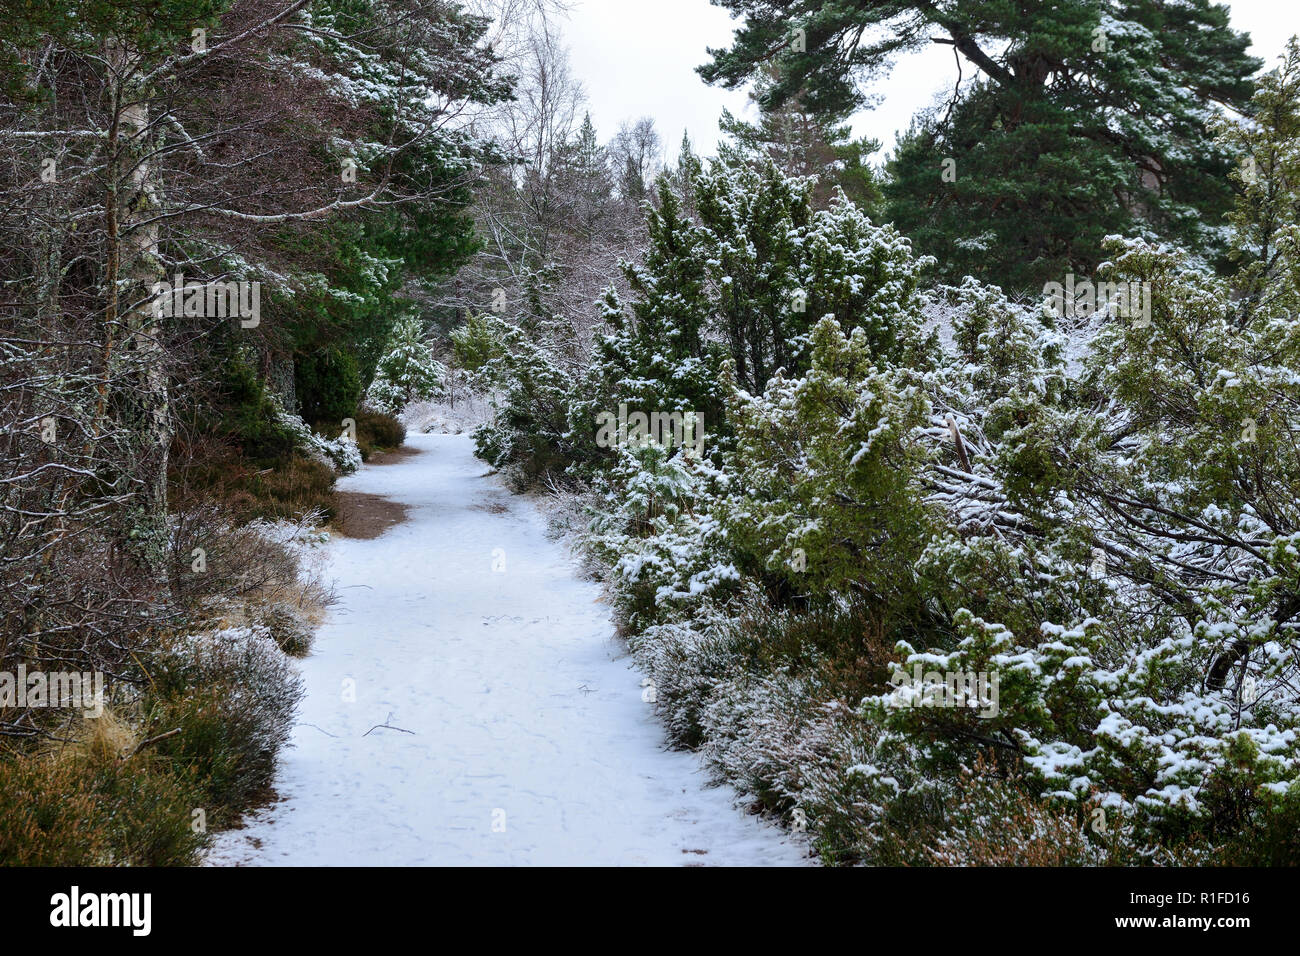 Promenade dans la forêt hiver neige, Rothiemurchus, près d'Aviemore, région des Highlands, Ecosse Banque D'Images